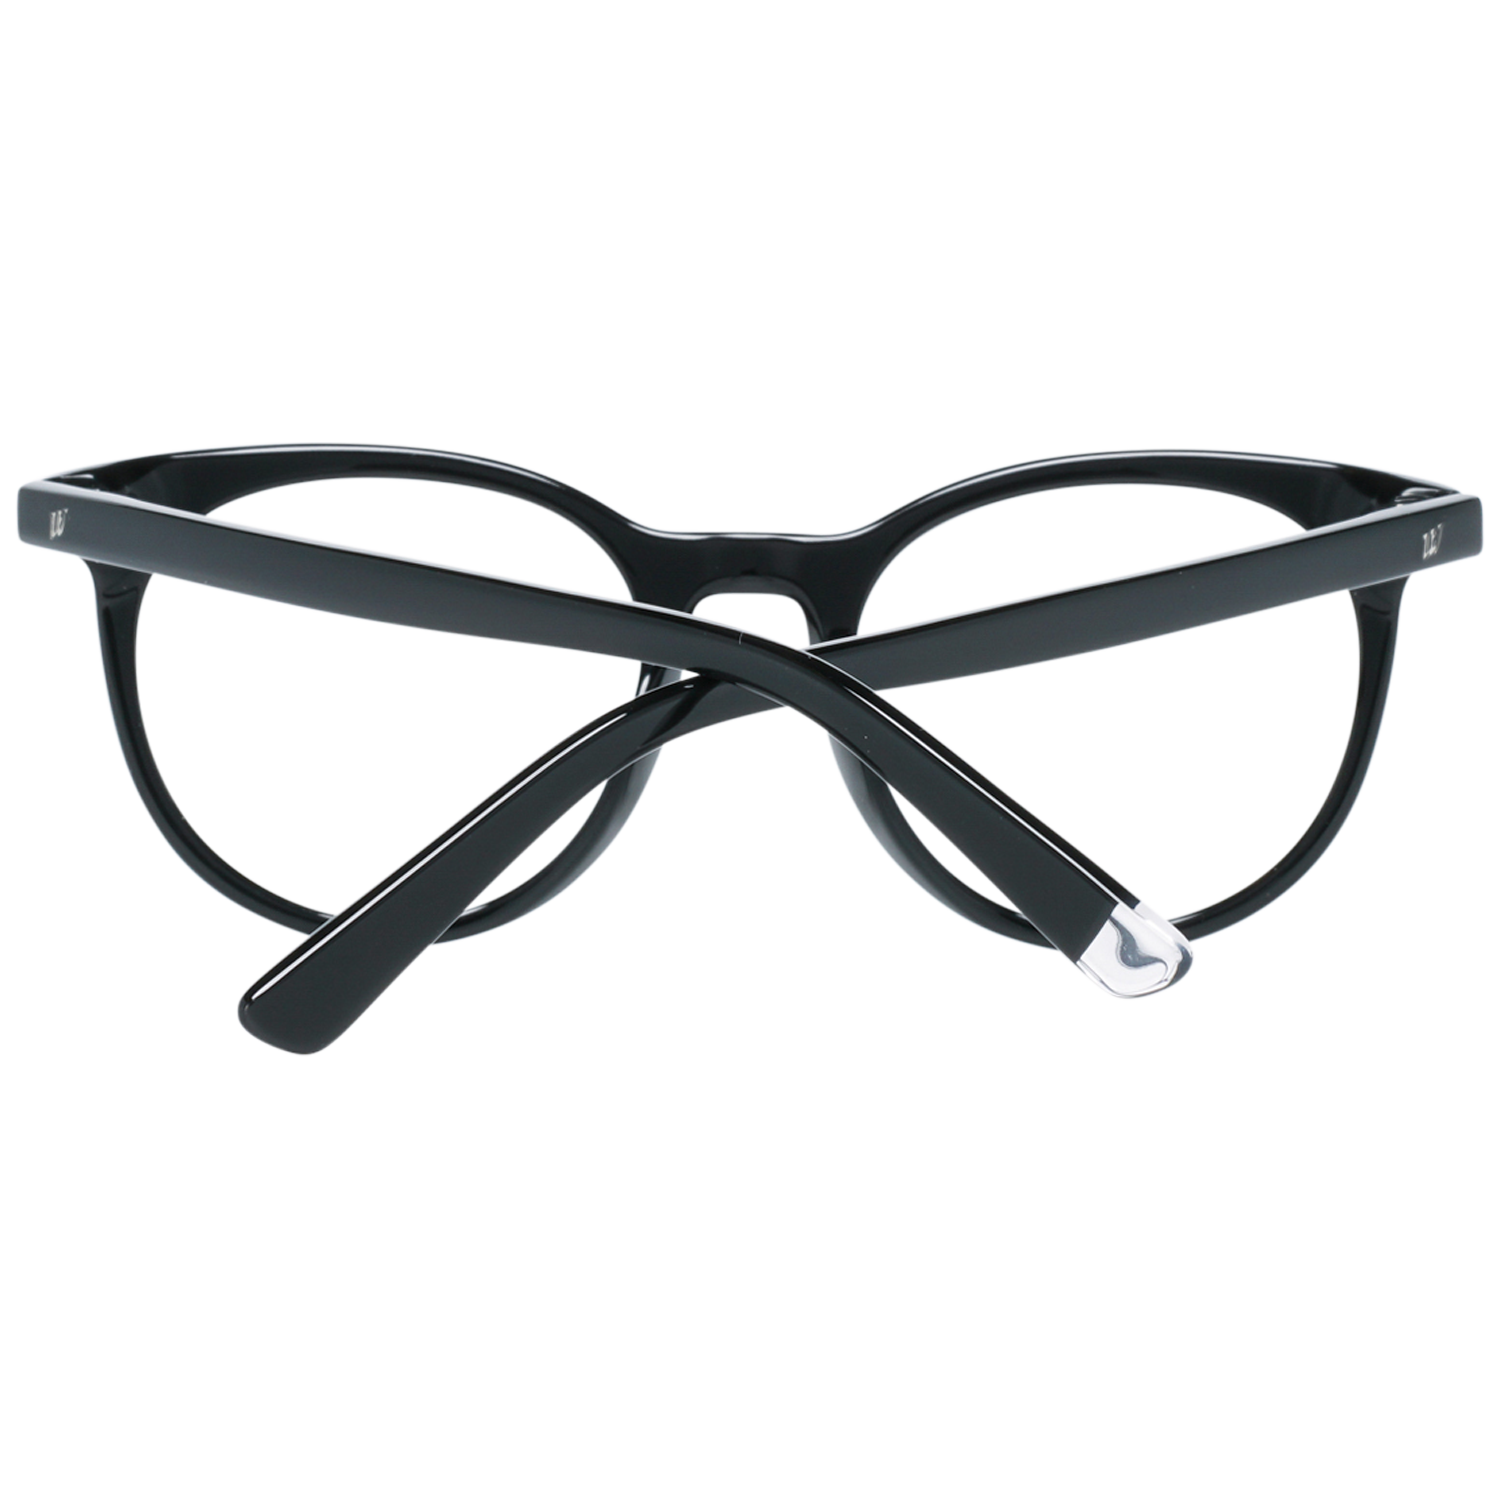 Web Frames Web Glasses Optical Frame WE5251 001 49 Eyeglasses Eyewear UK USA Australia 